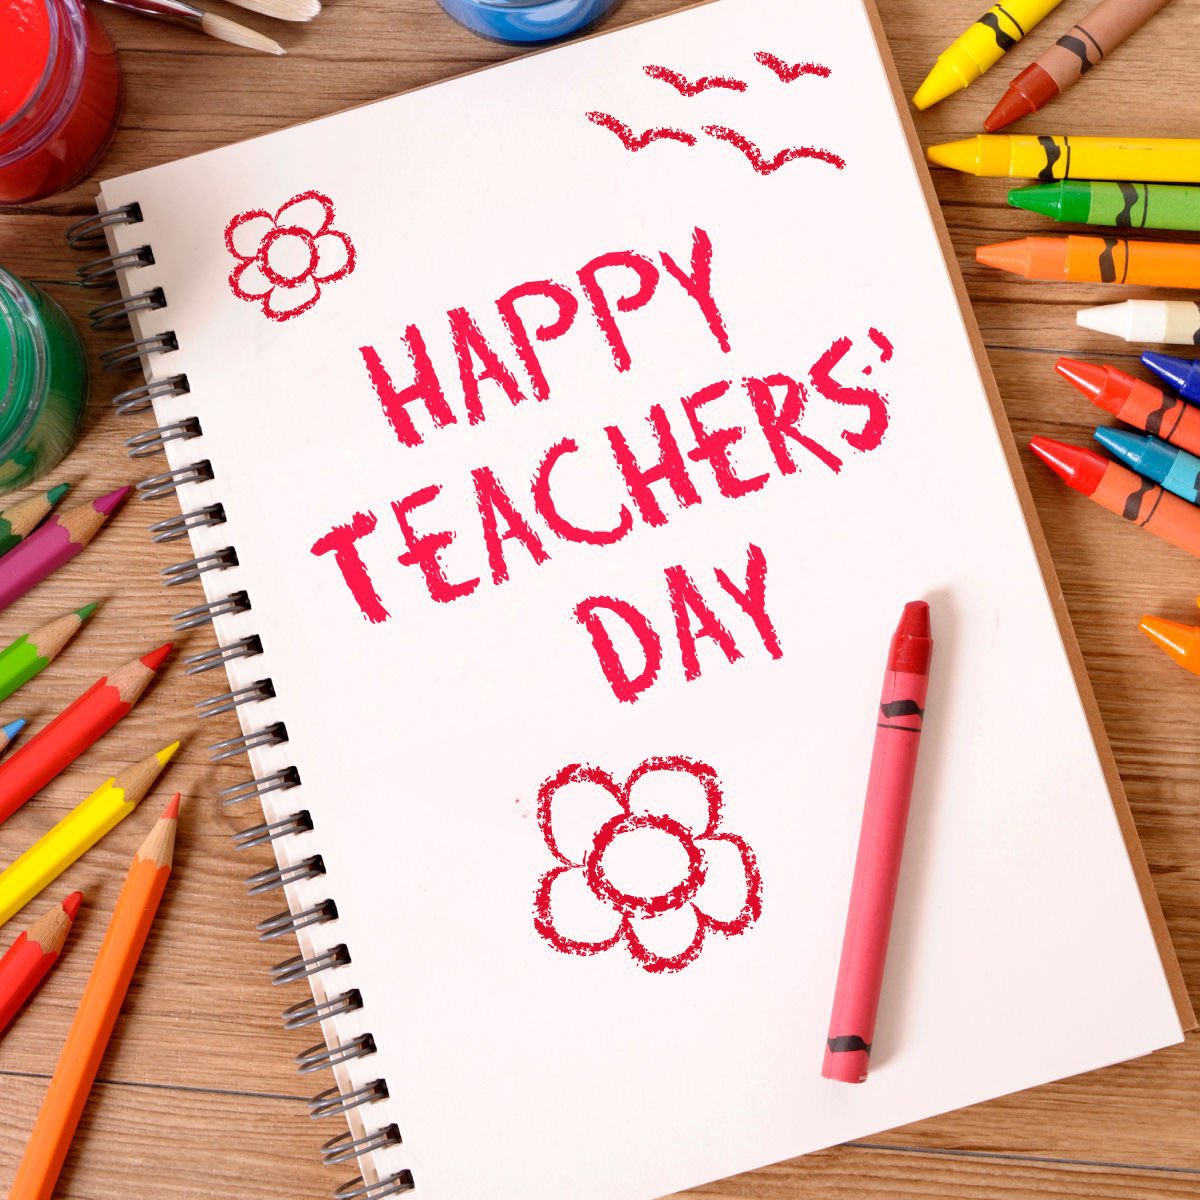 Всех причастных с праздником!🎈🥳👊 #TeachersDay2021  #сднемучителя